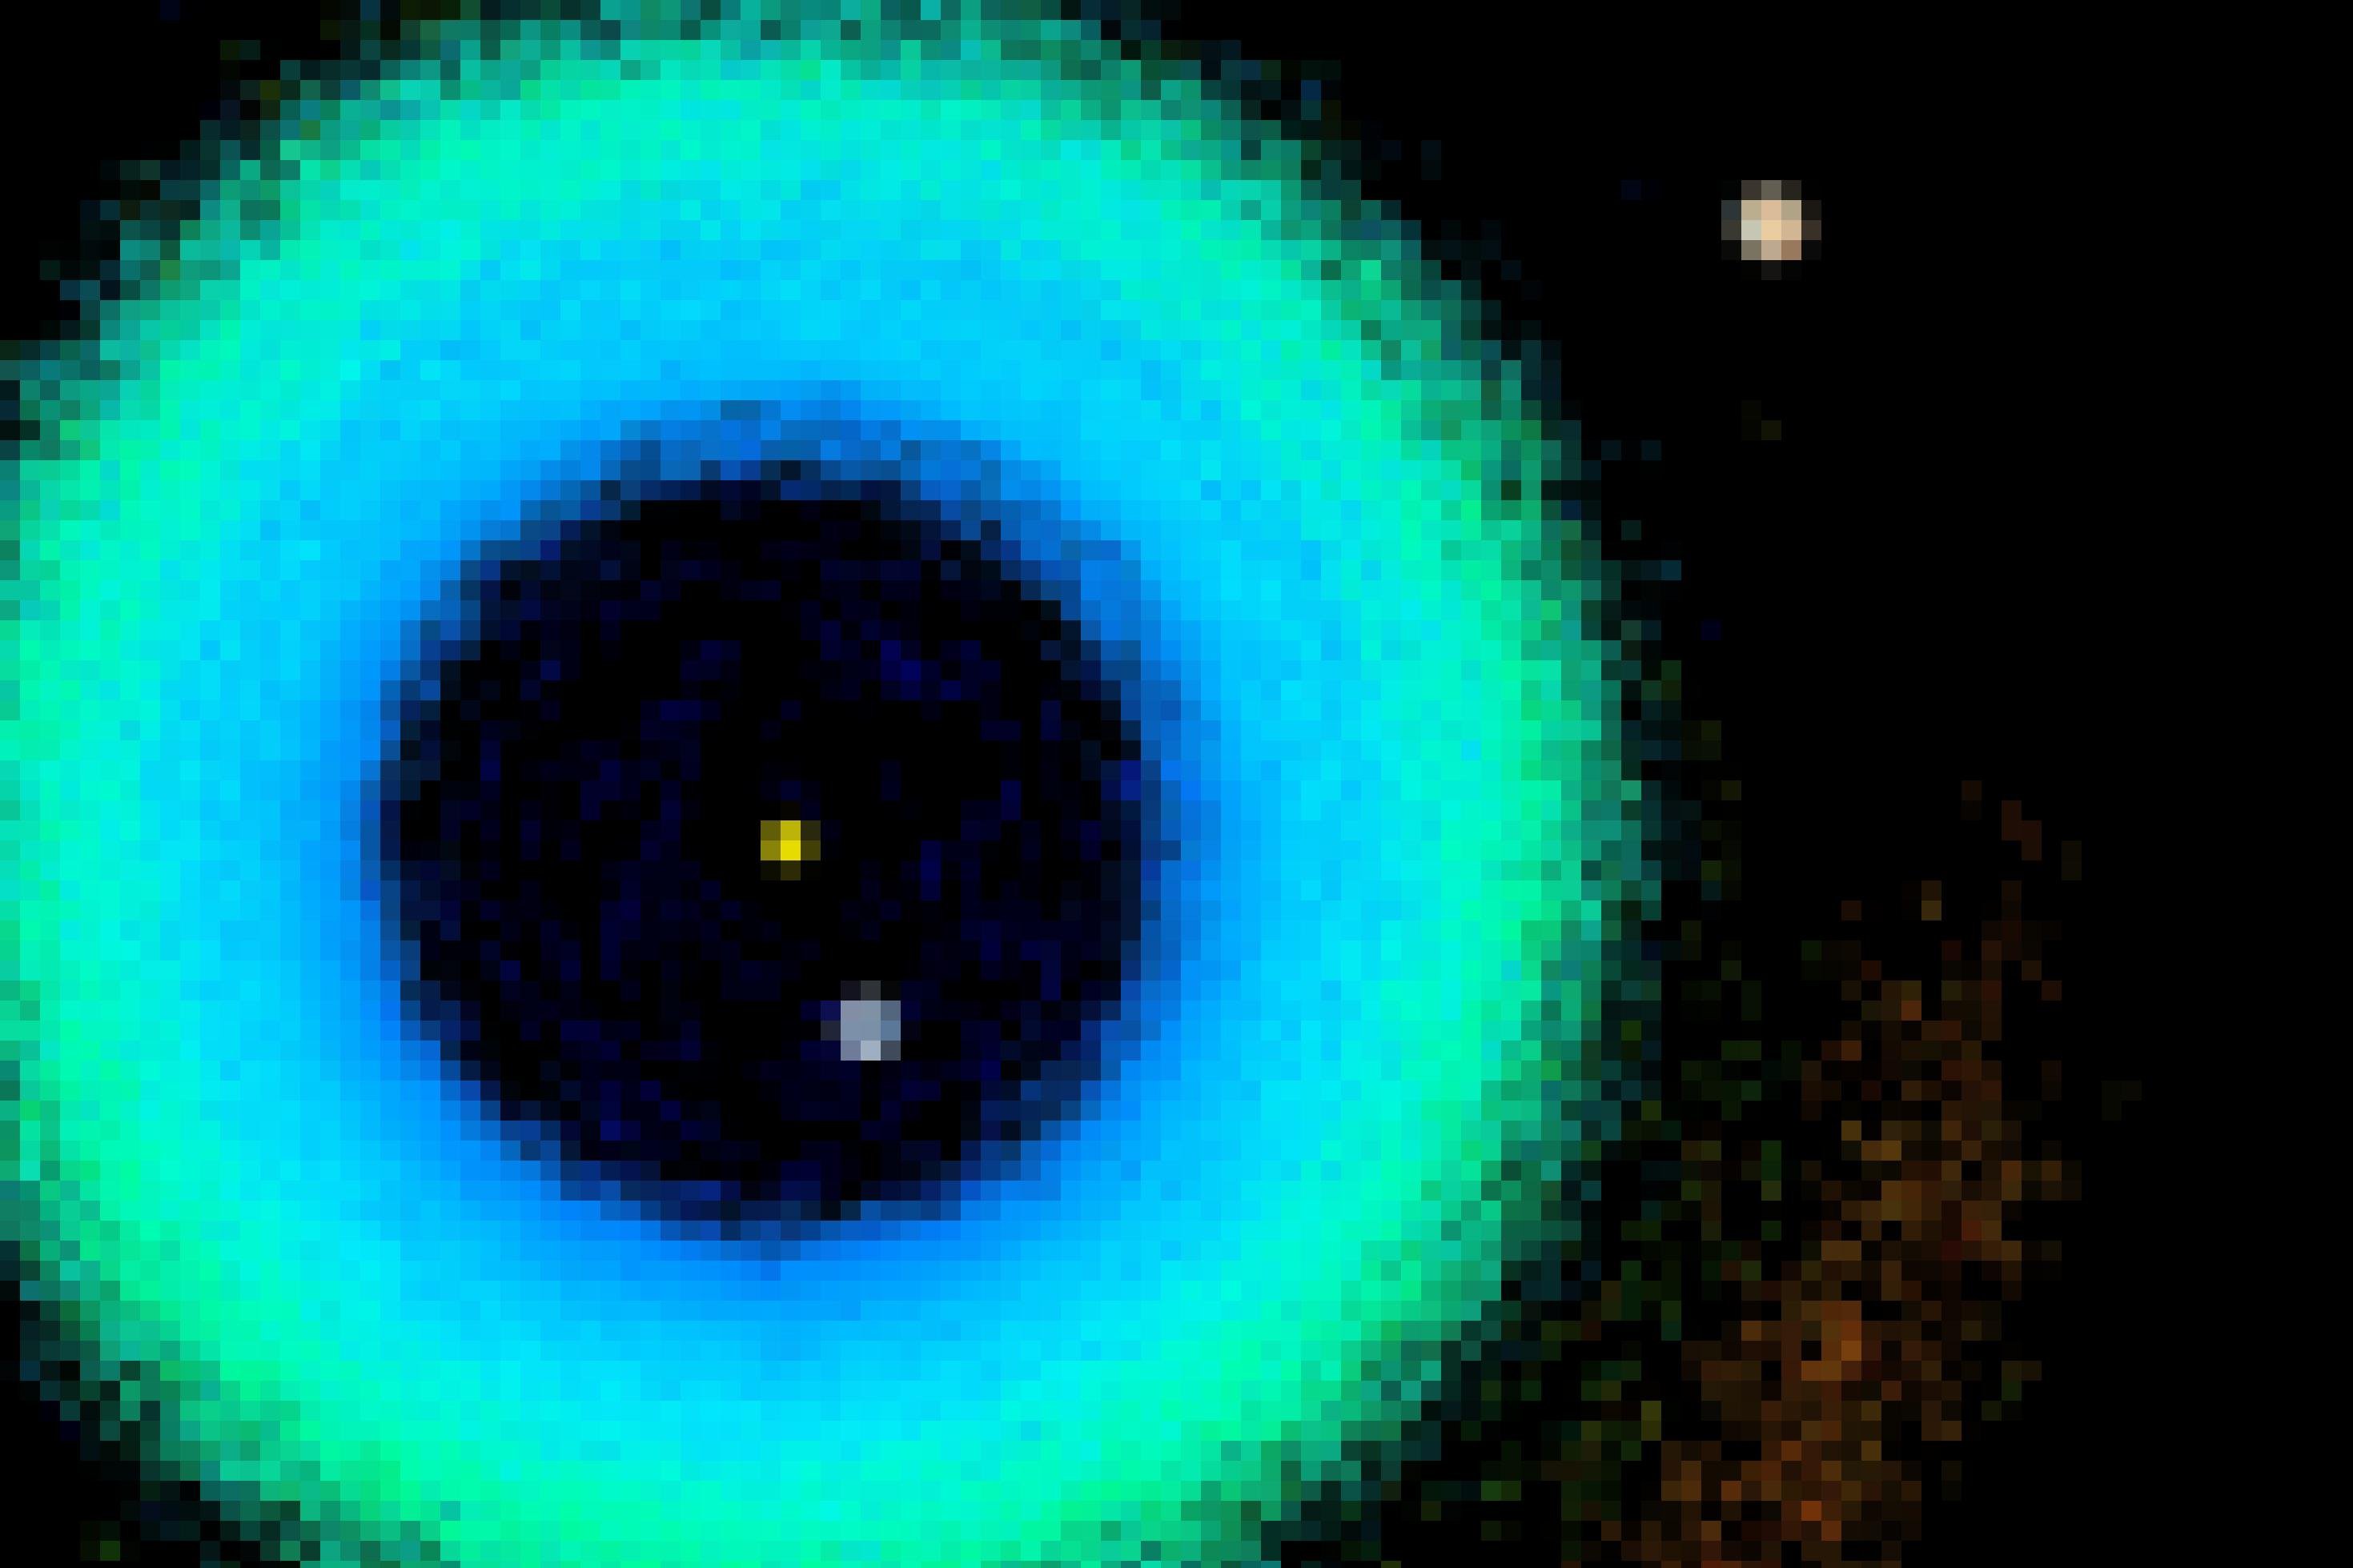 In der Grafik ist mittig im linken Bilddrittel ein gelber runder Fleck (Sonne) zu sehen, mit etwas Abstand auf Höhe zwischen fünf und sechs Uhr ist die Erde abgebildet, in noch weiterer Entfernung auf der Höhe von etwa zwei Uhr Jupiter. Die Sonne ist konzentrisch von blauen, grünlichen und noch weiter außen rötlichen Teilsegmenten von Kreislinien umgeben, die Bahnsegmente von Asteroiden darstellen..